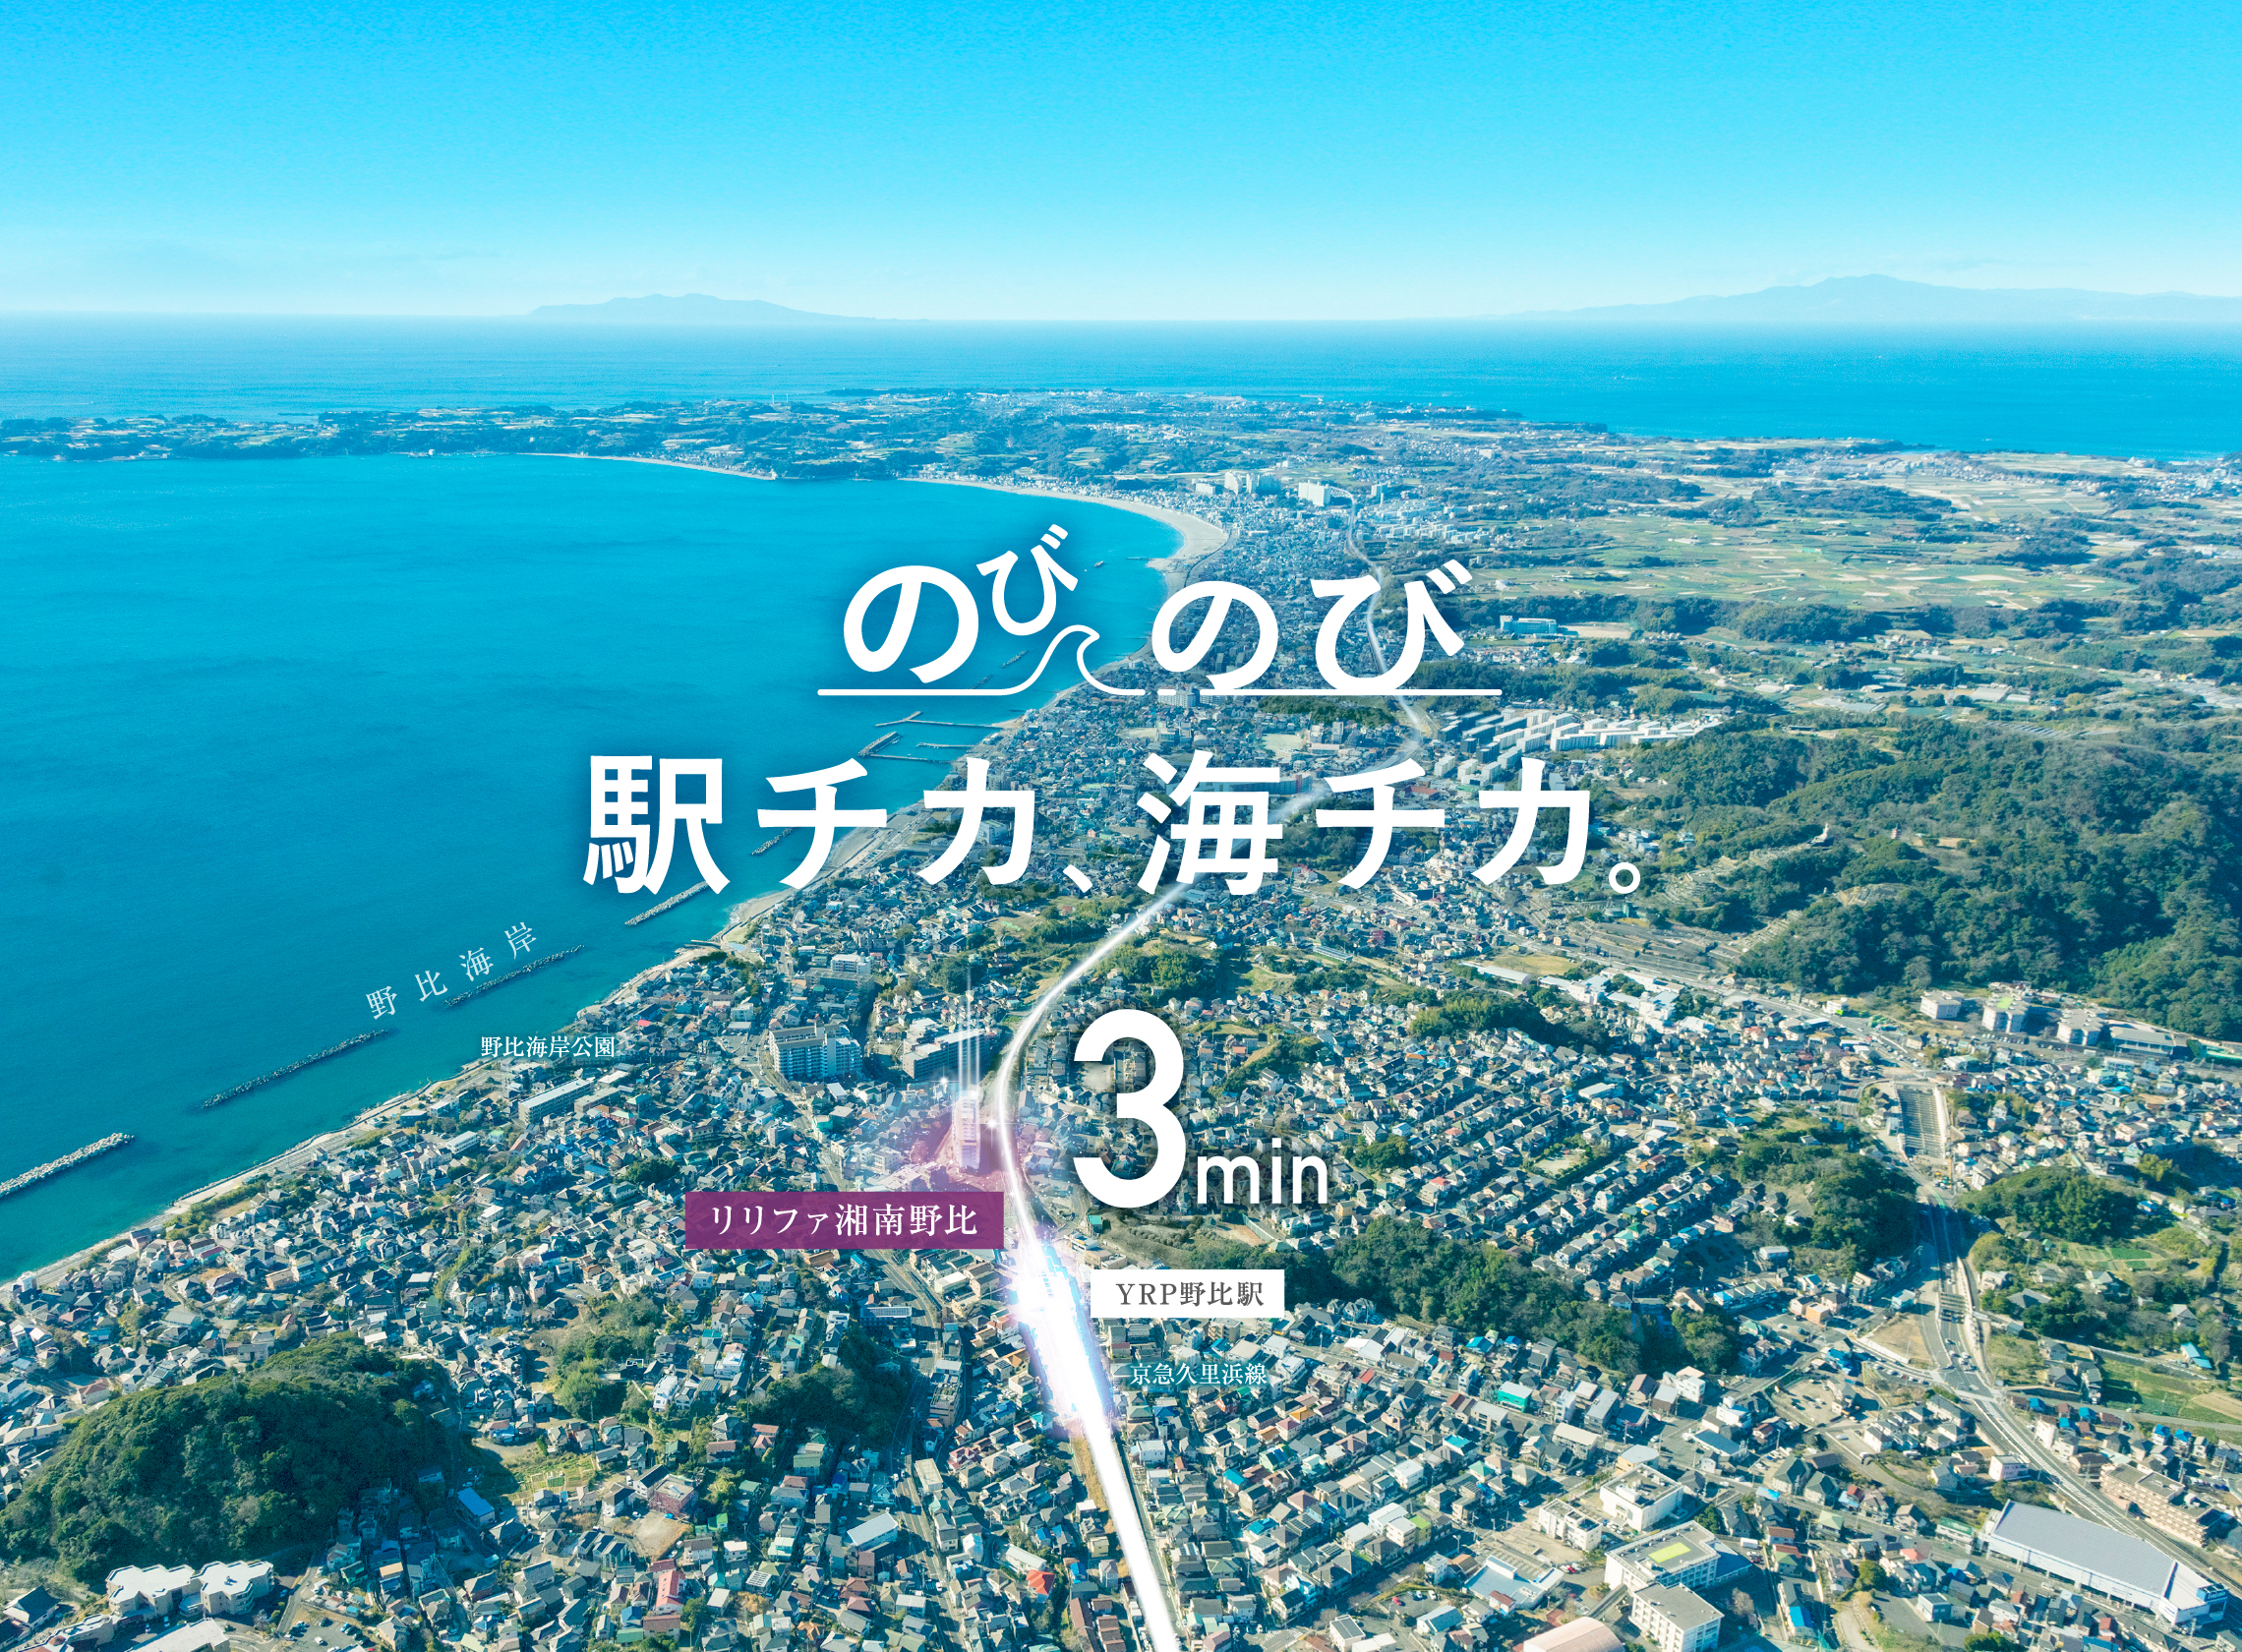 リリファ湘南野比上空から見た地図。立地場所が駅と海が近いことを伝える画像